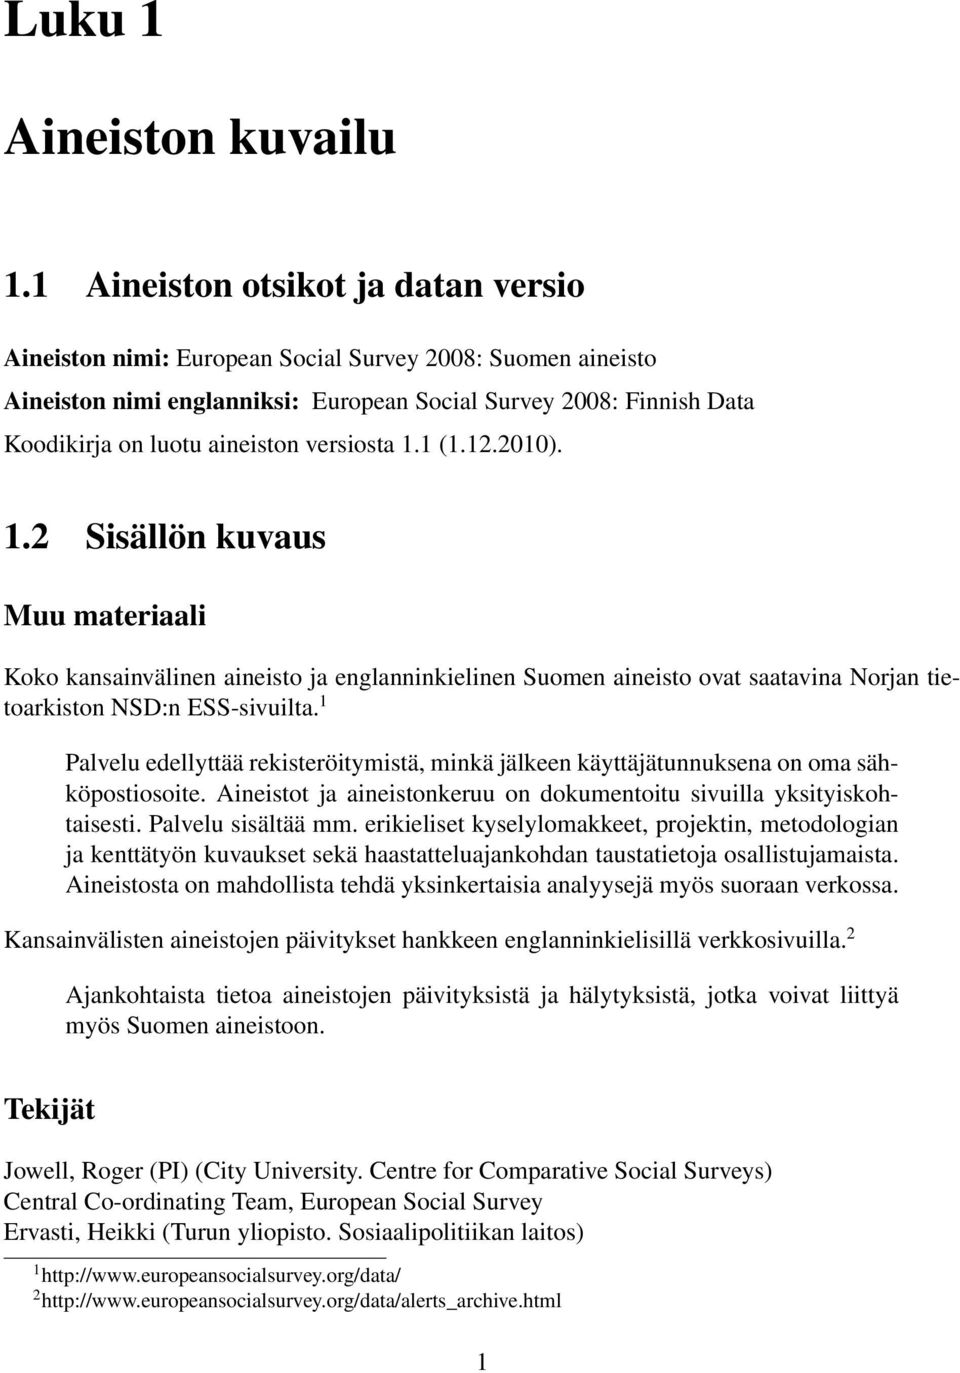 versiosta 1.1 (1.12.2010). 1.2 Sisällön kuvaus Muu materiaali Koko kansainvälinen aineisto ja englanninkielinen Suomen aineisto ovat saatavina Norjan tietoarkiston NSD:n ESS-sivuilta.